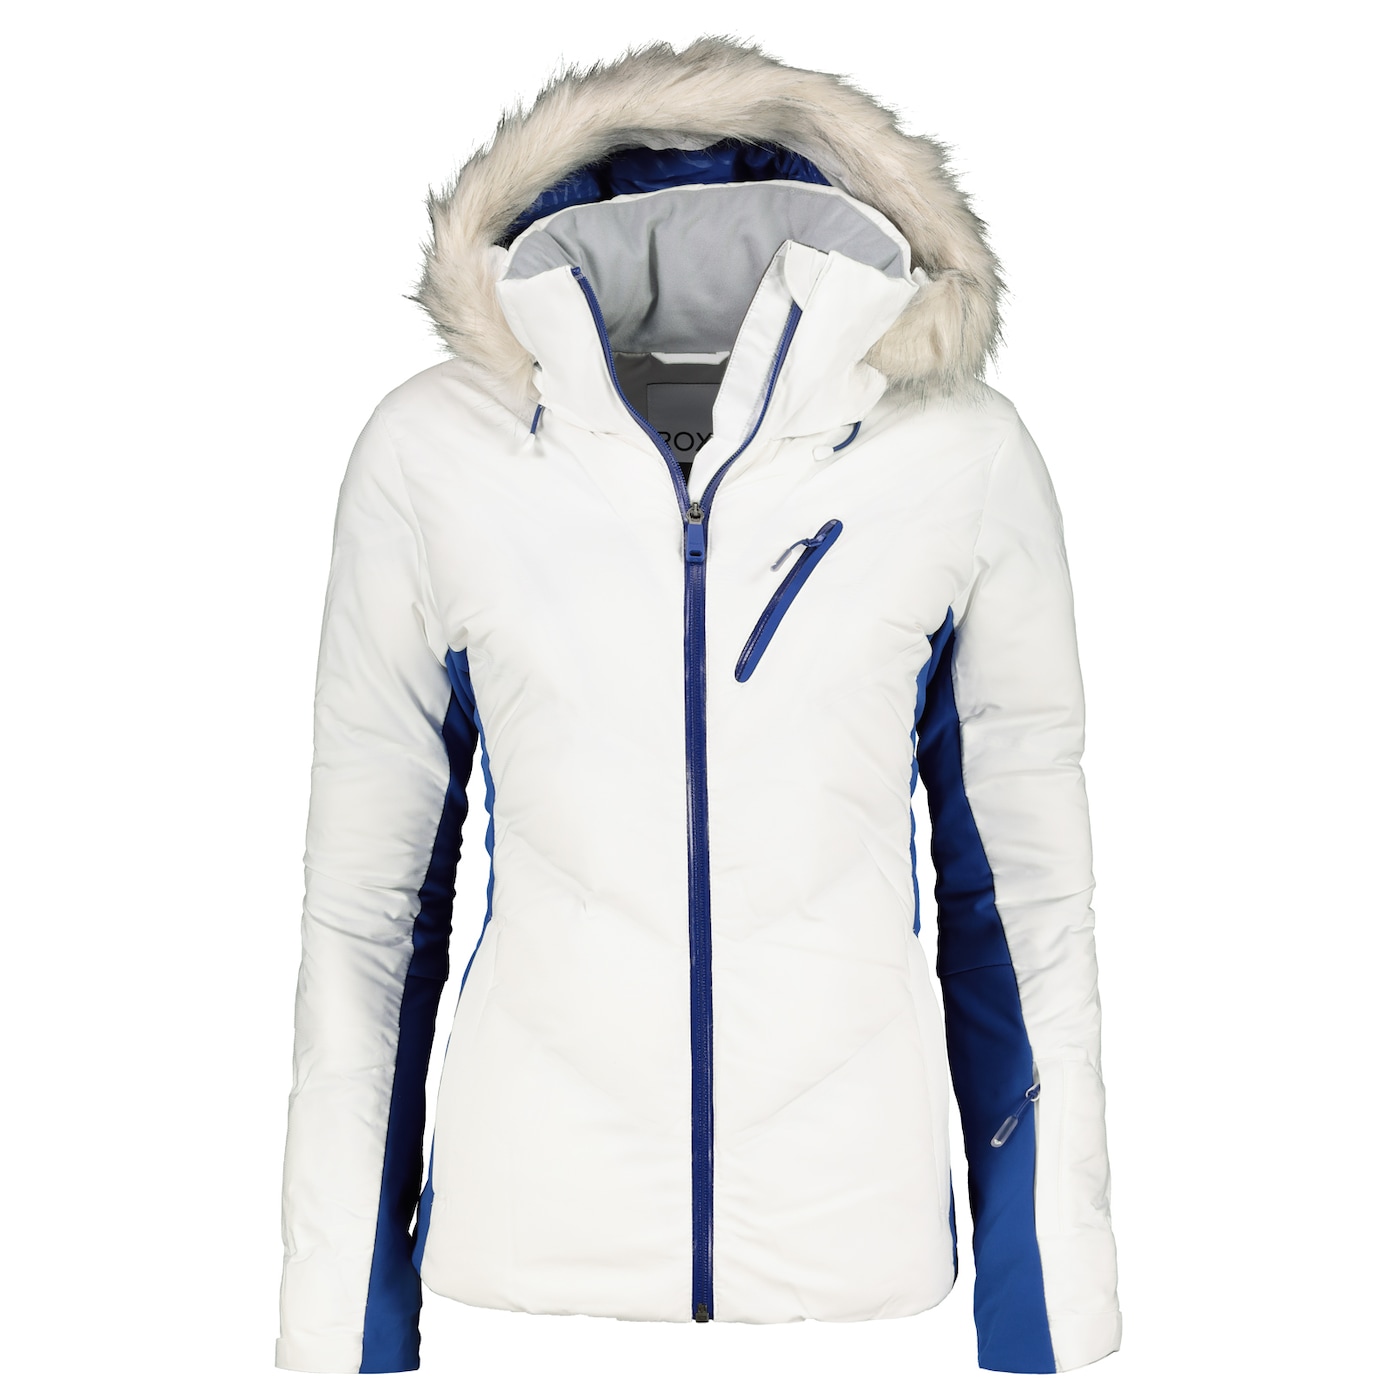 Жени  Дамско облекло  Якета & Палта  Скиорски якета Women’s jacket ROXY SNOWSTORM 1352638-7424035